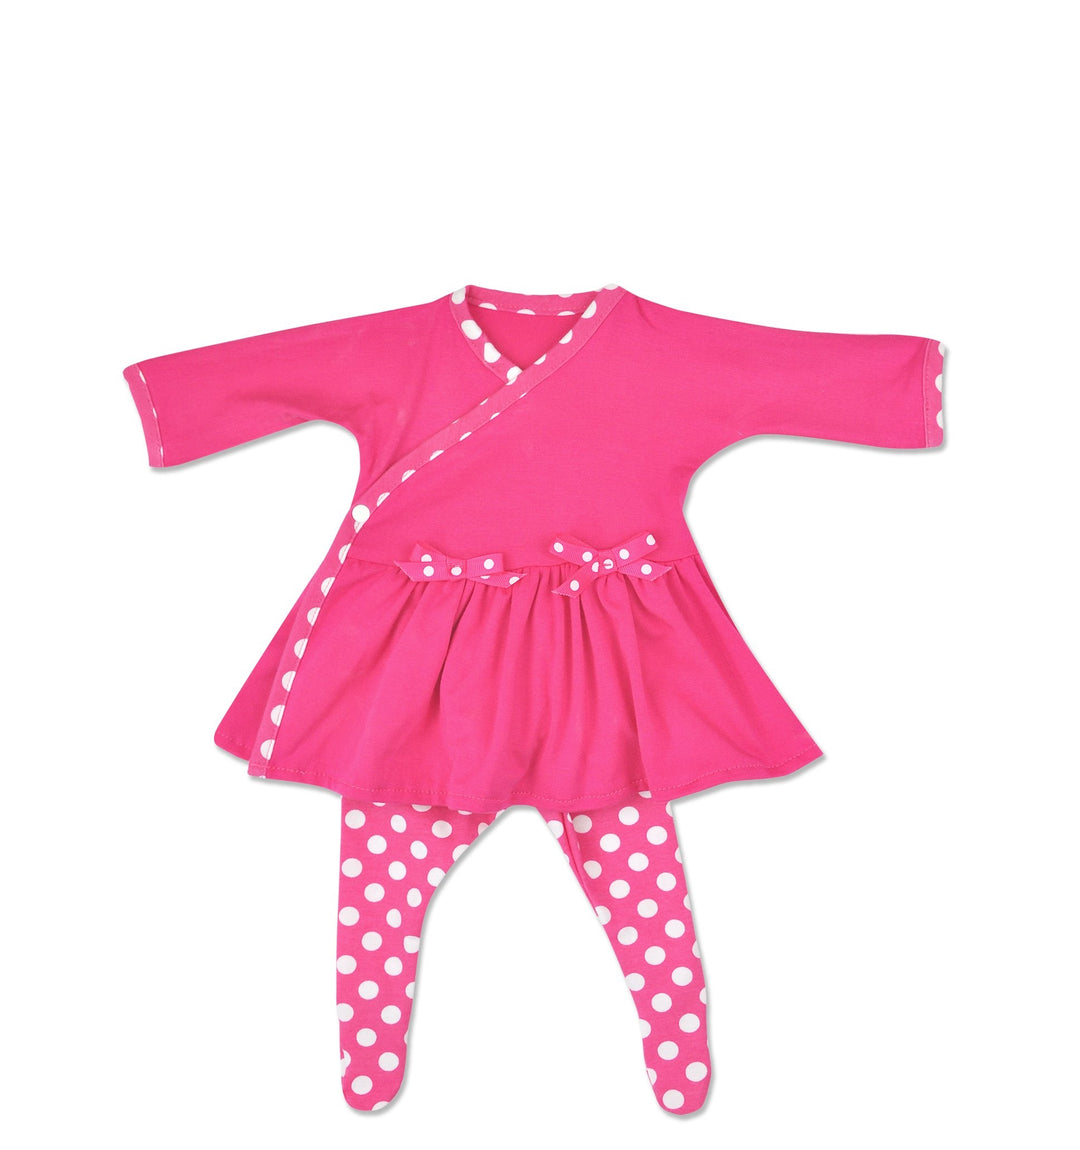 Preemie Girls Pink Polka Dot Bamboo Side Snap Dress with Matching  Polka Dot Tights